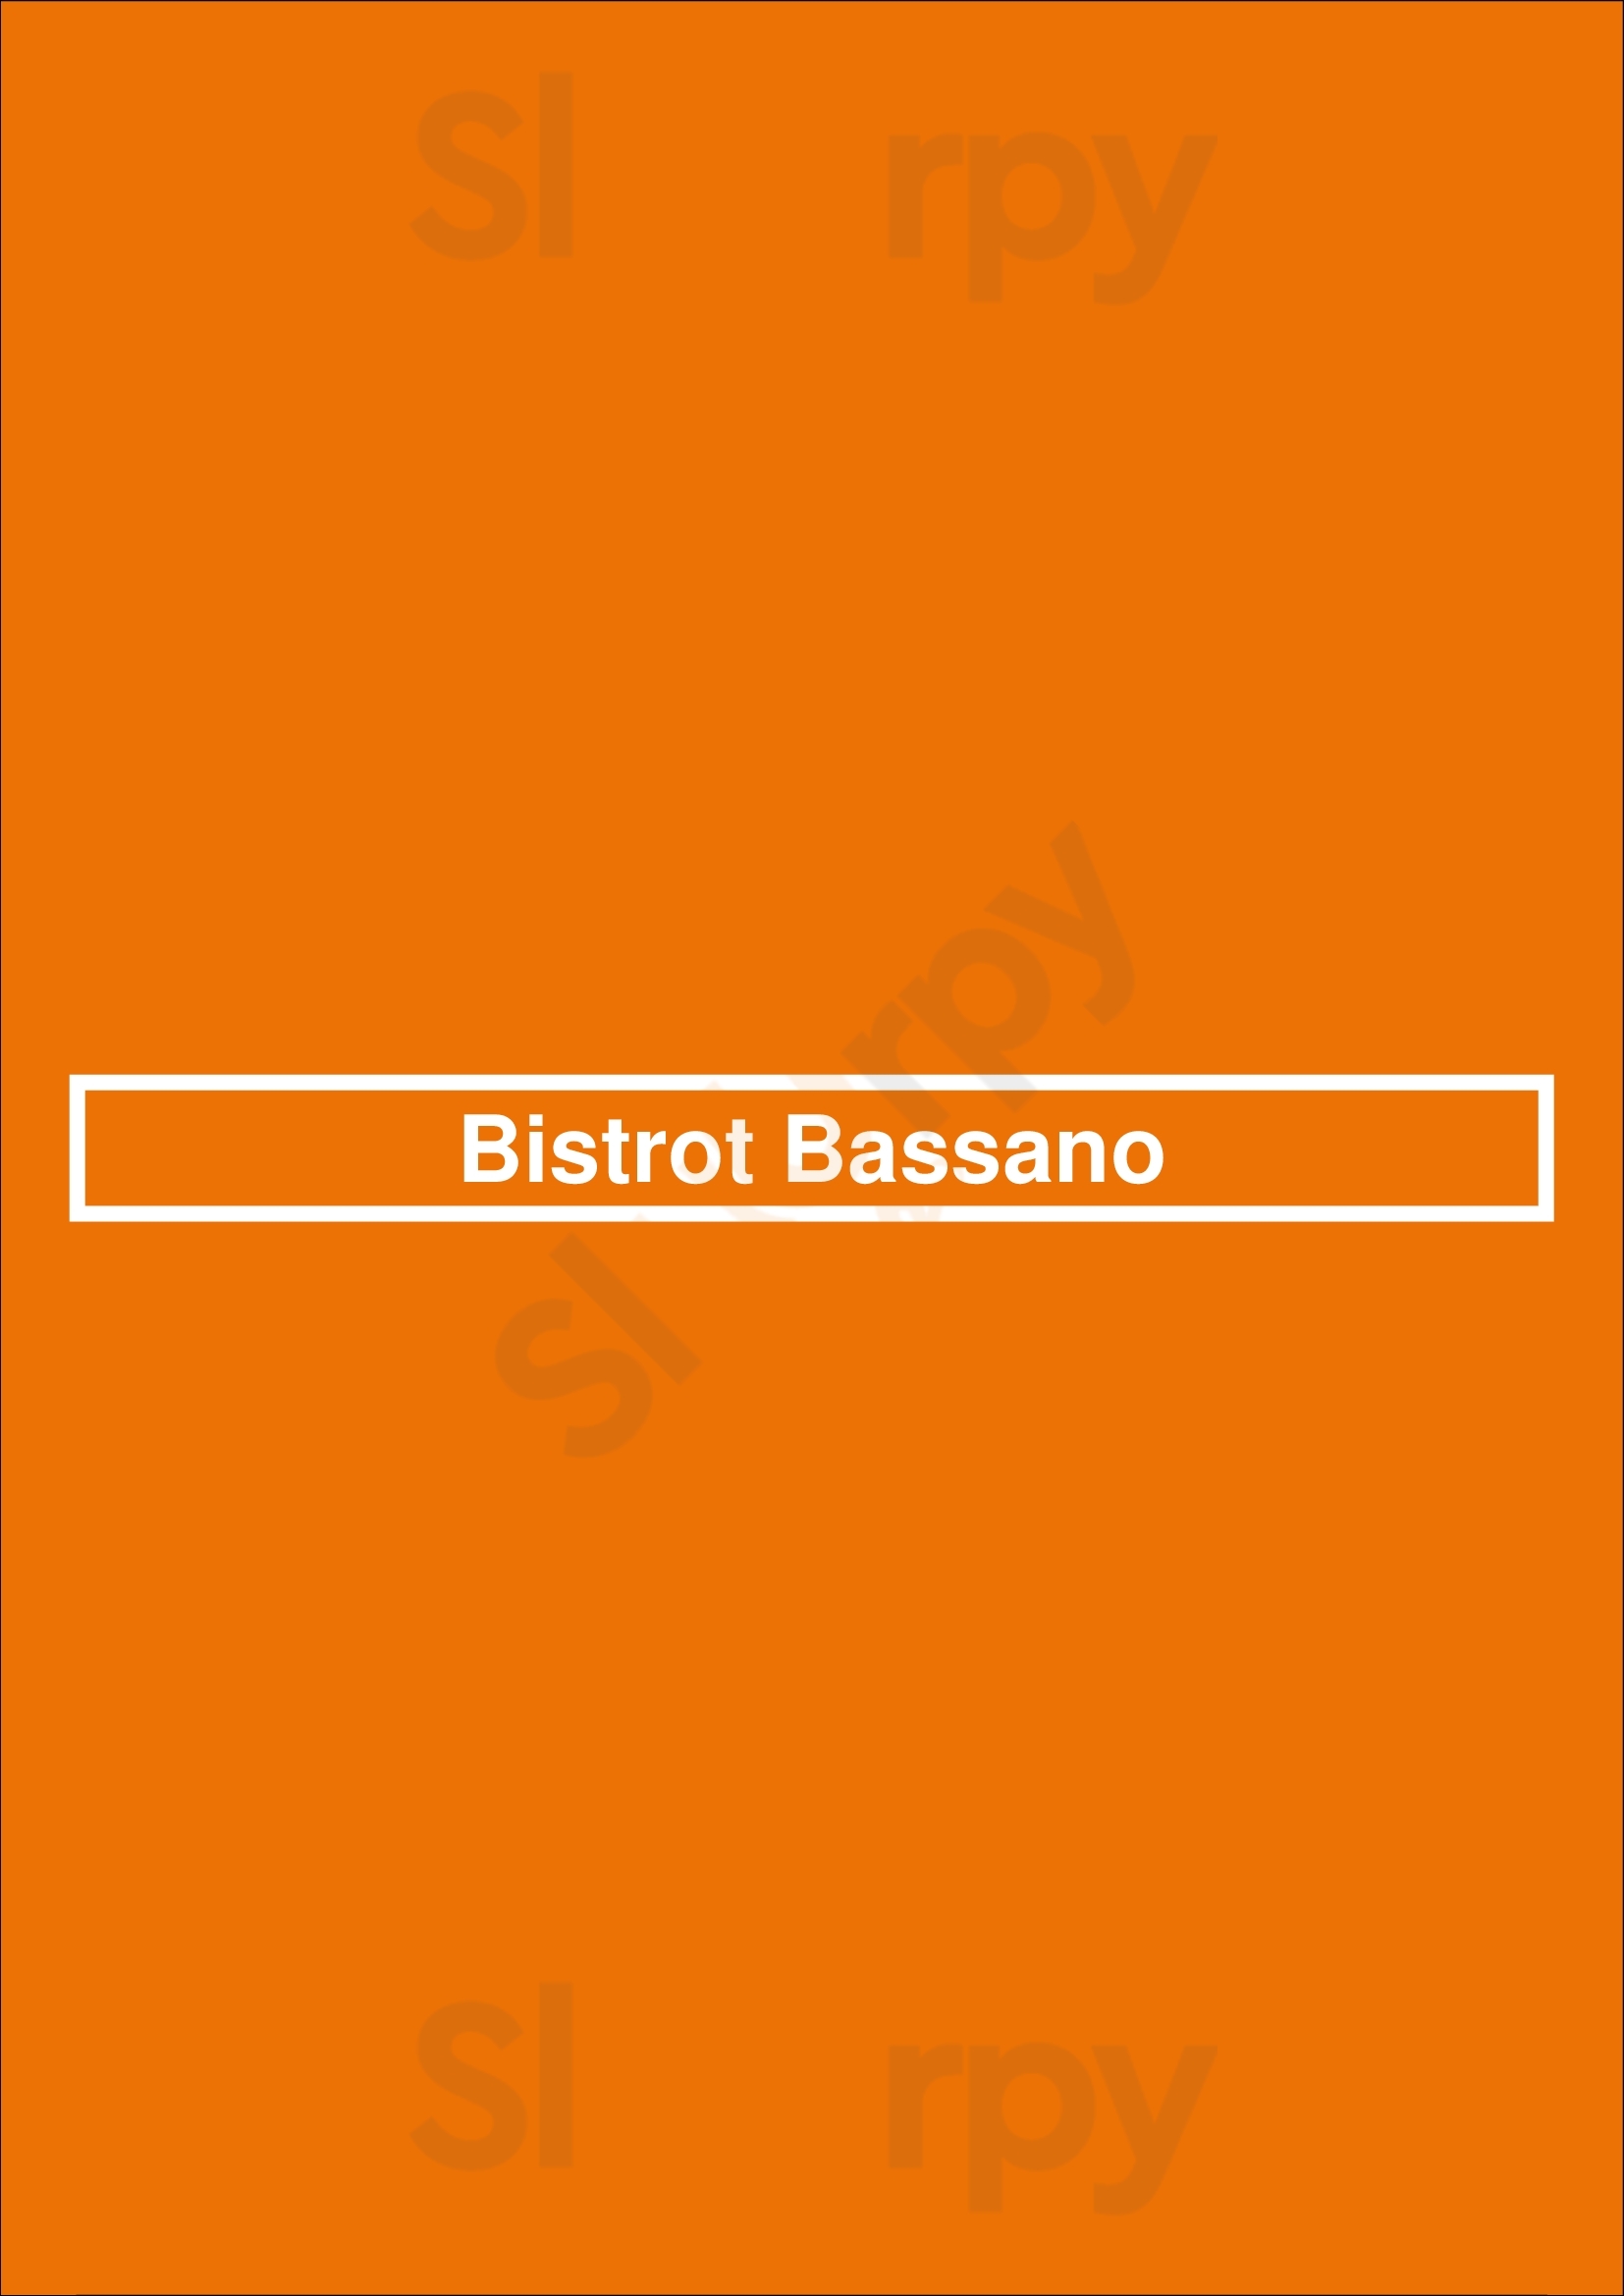 Bistrot Bassano Paris Menu - 1